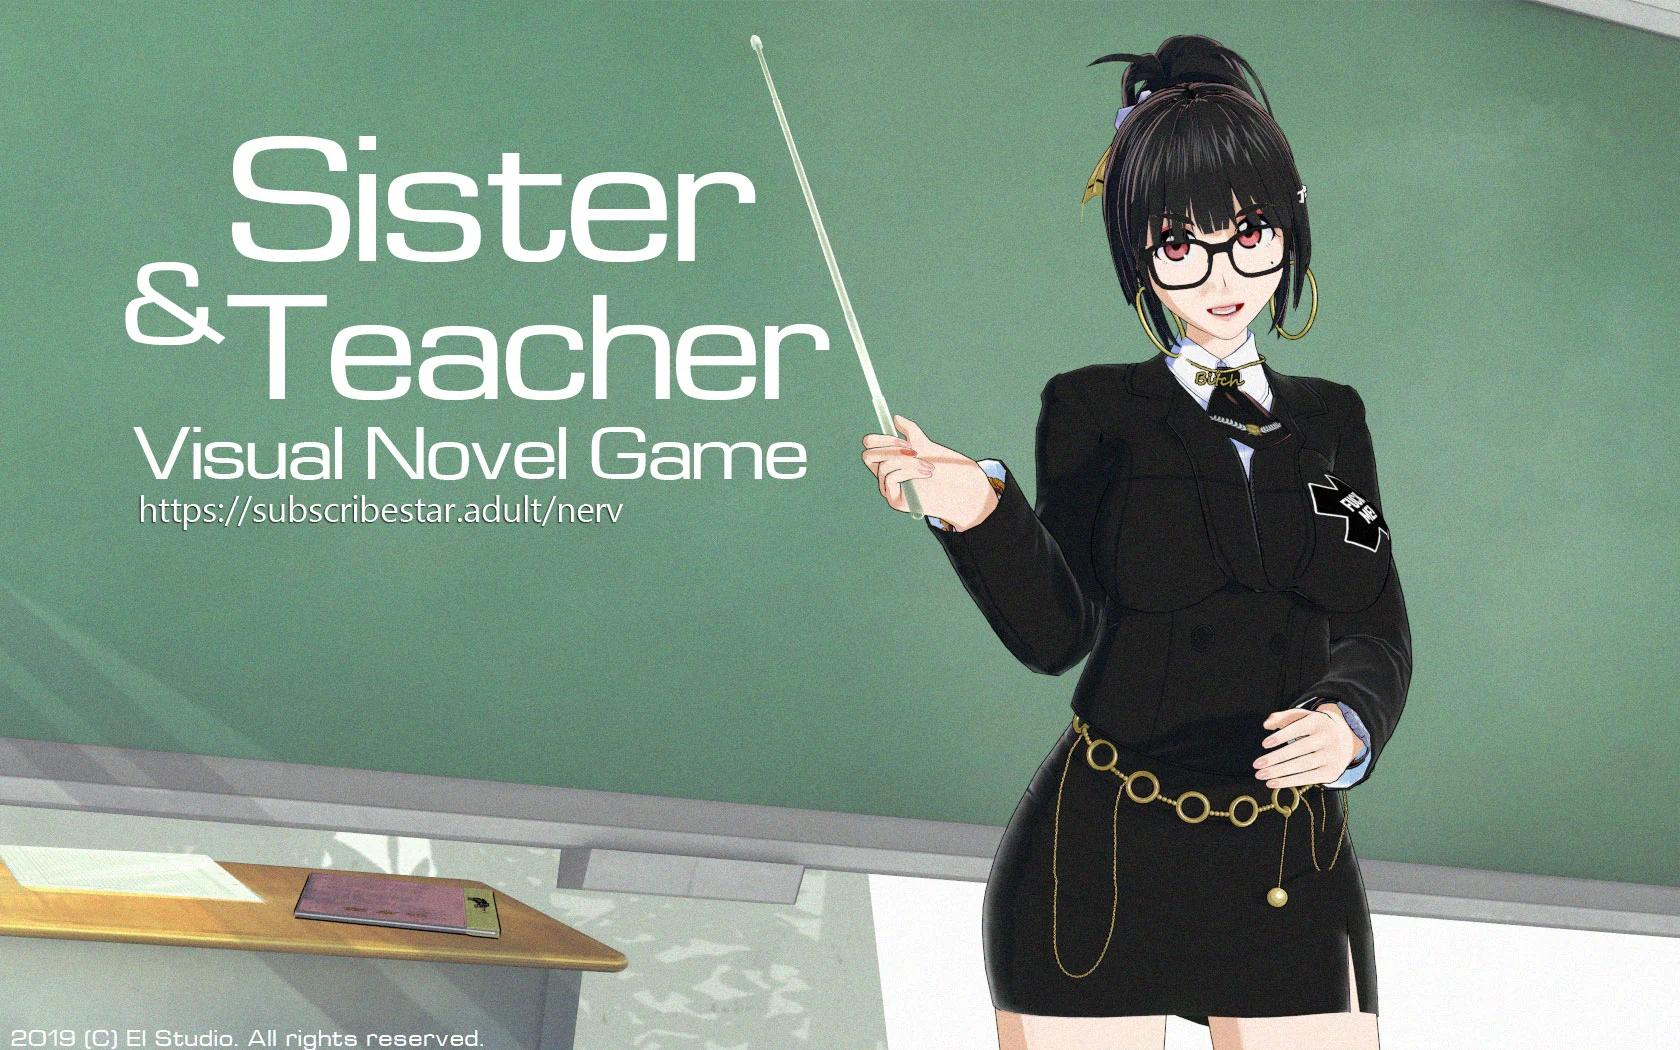 Sisntea: Sister & Teacher [v0.04f] main image